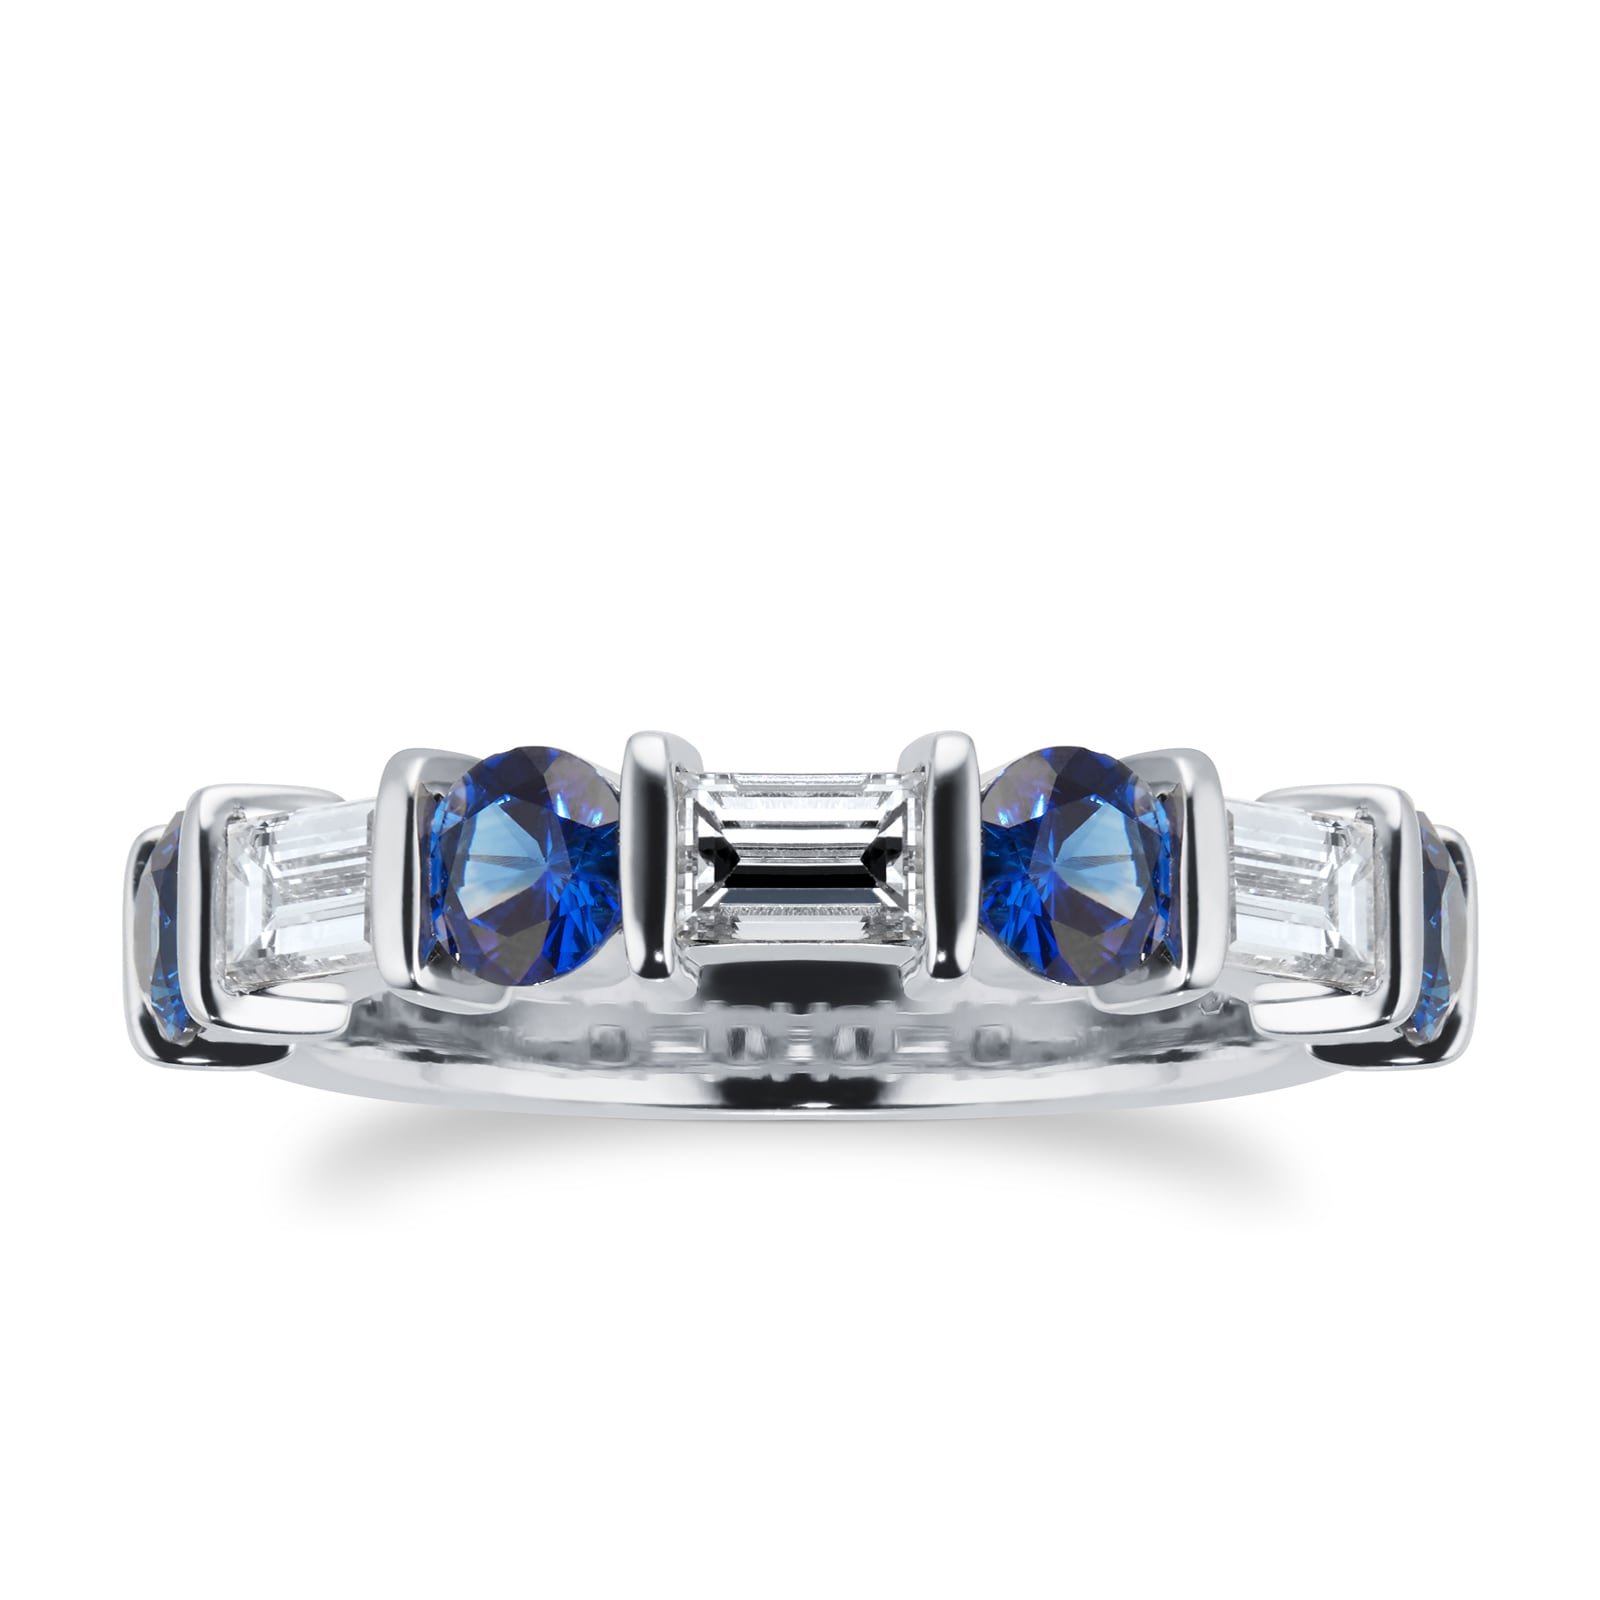 Platinum 0.81cttw Diamond & Baguette Cut Sapphire Eternity Ring - Ring Size M.5